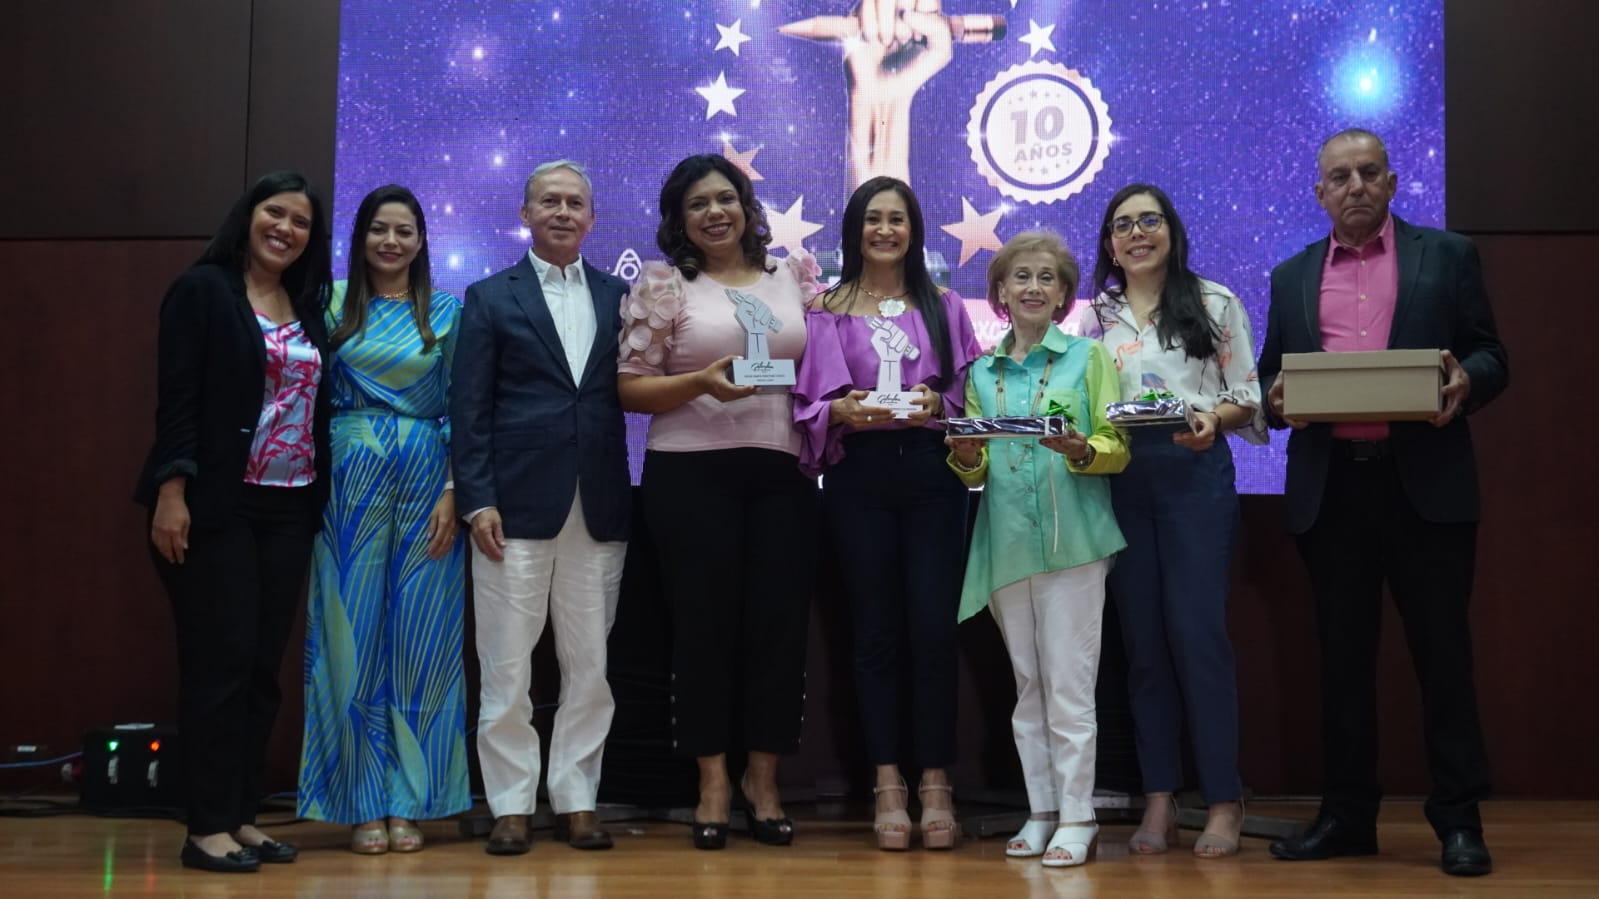 La Cámara de Comercio de Bucaramanga celebró los 10 años de Galardón a la Excelencia, premiando las mejores experiencias de aula de los maestros